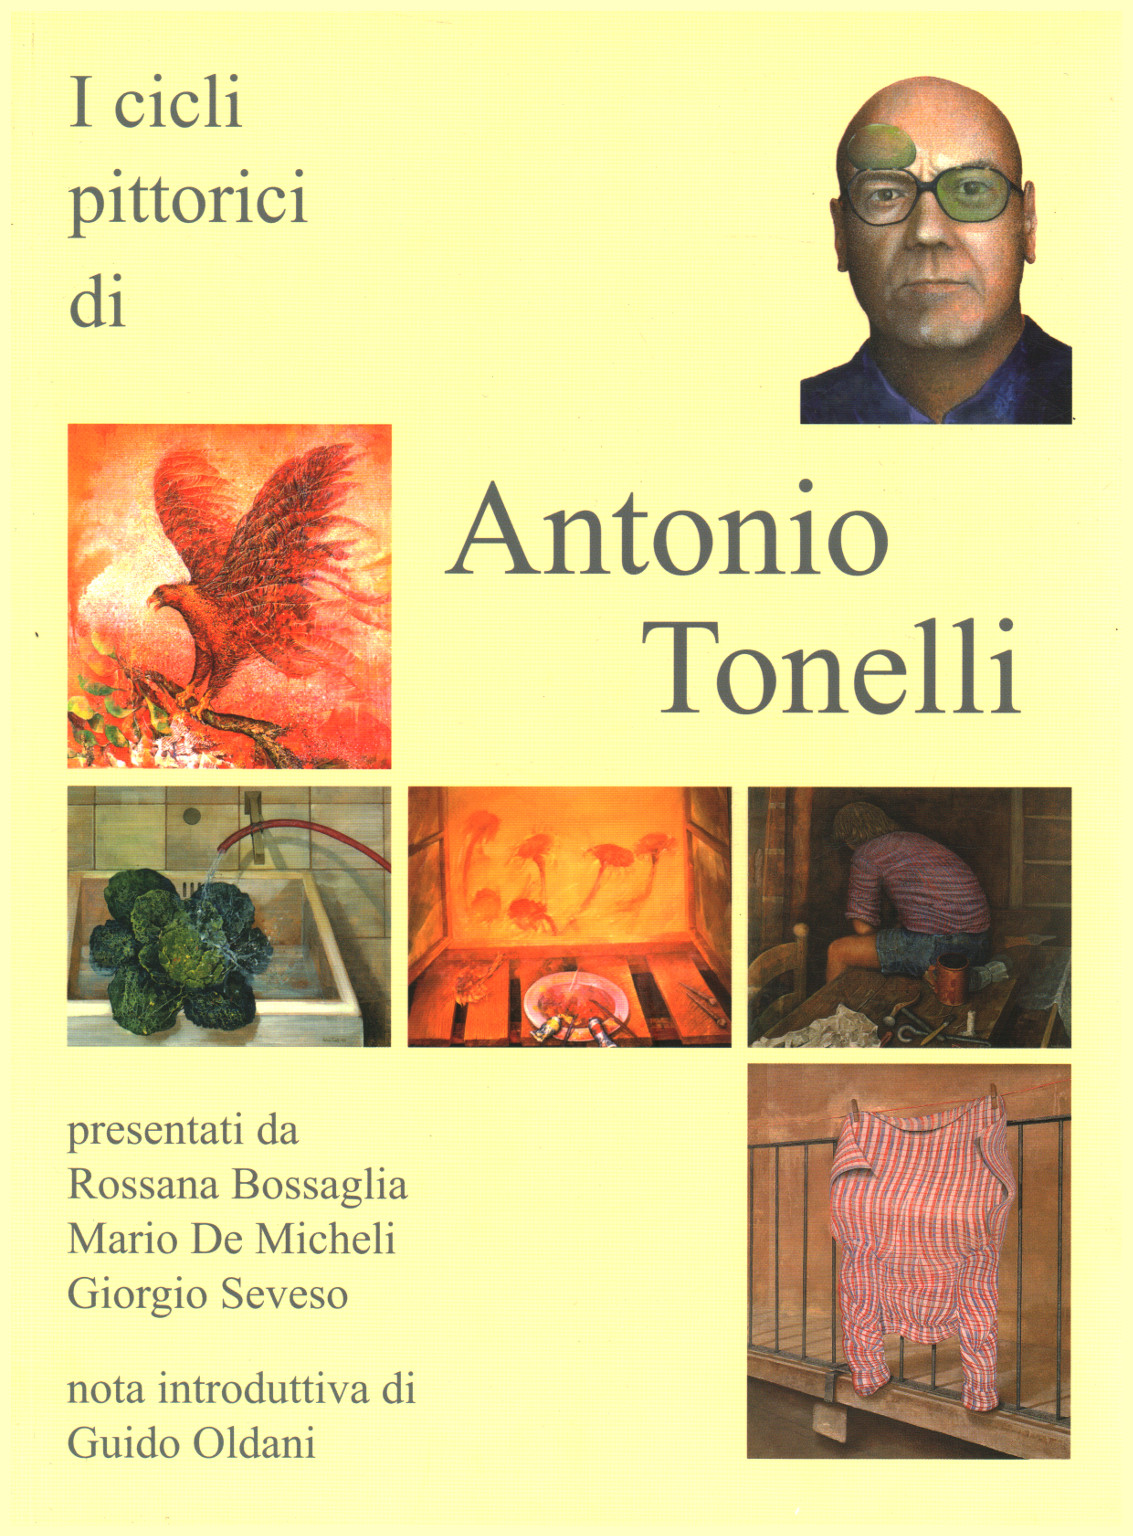 I cicli pittorici di Antonio Tonelli, s.a.